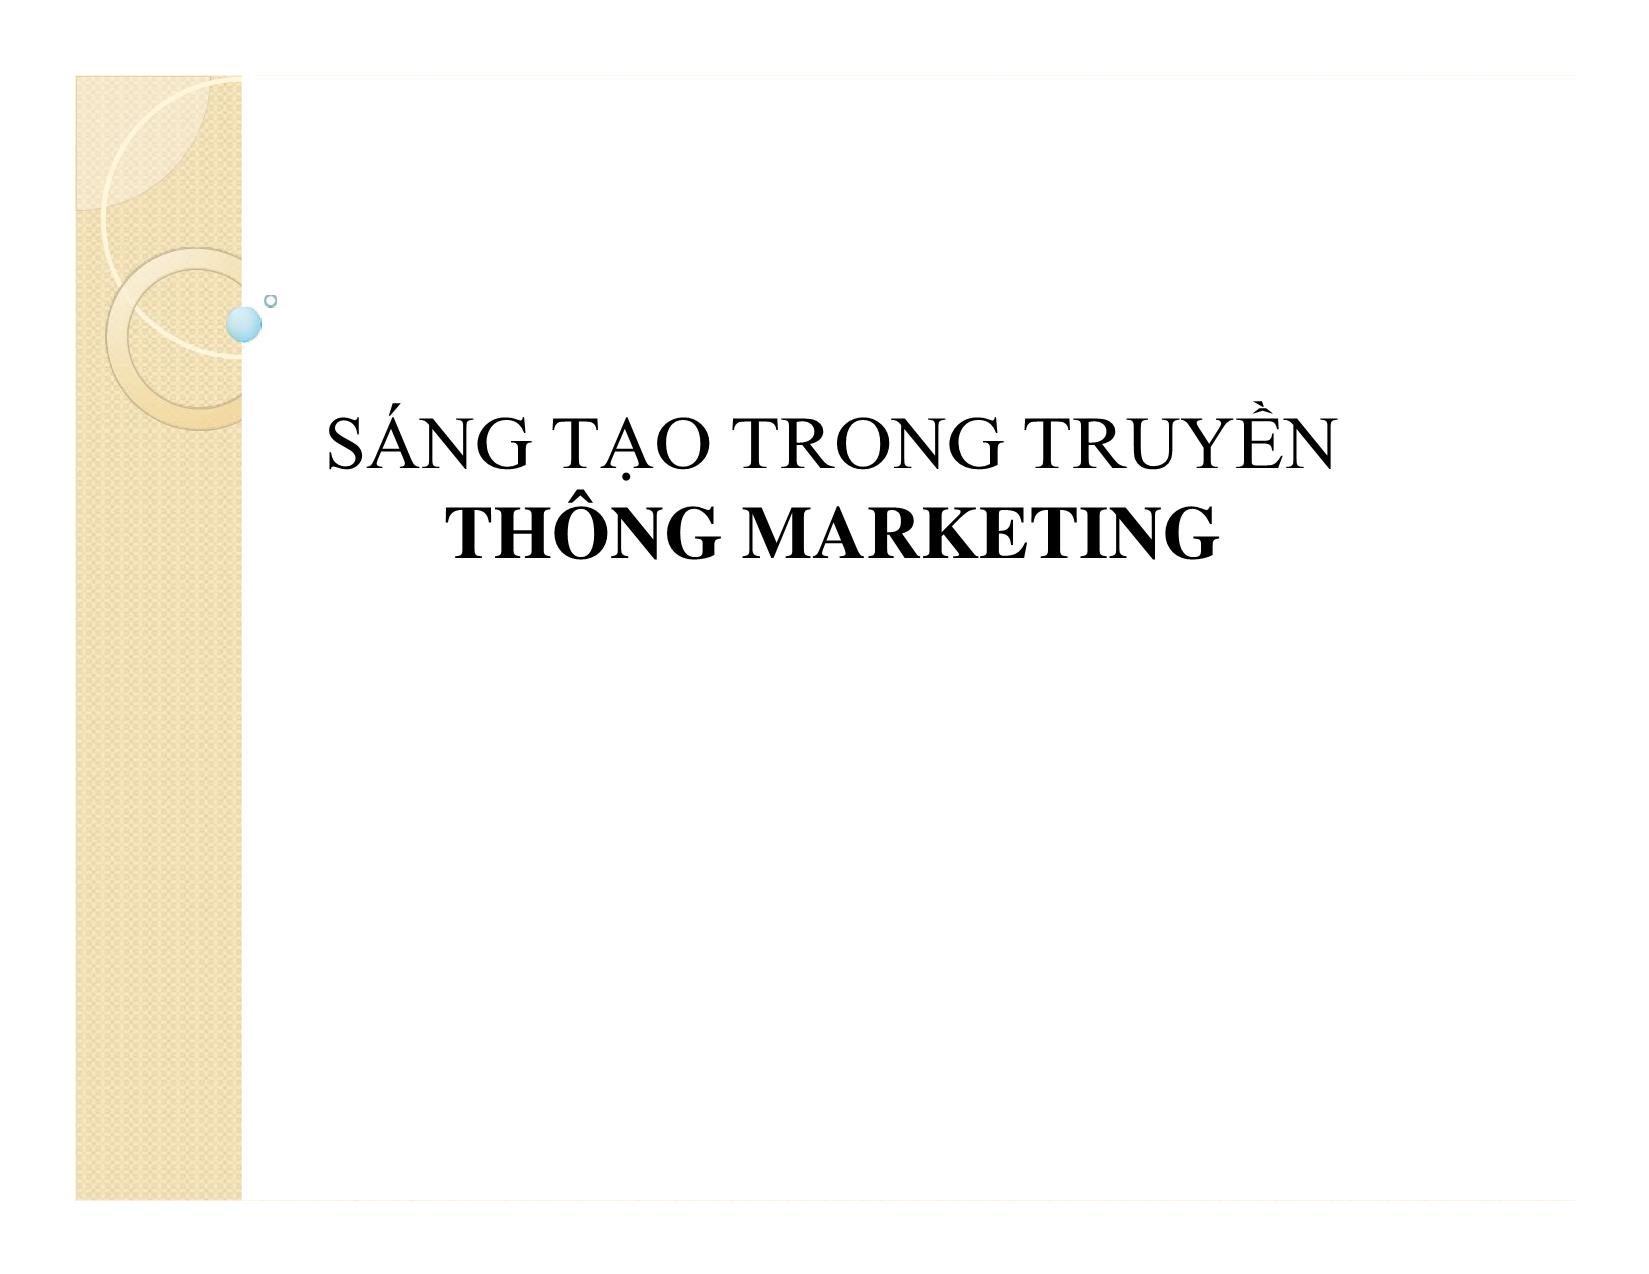 Bài giảng Truyền thông marketing tích hợp - Chương 4: Chiến lược sáng tạo trong truyền thông marketing trang 8